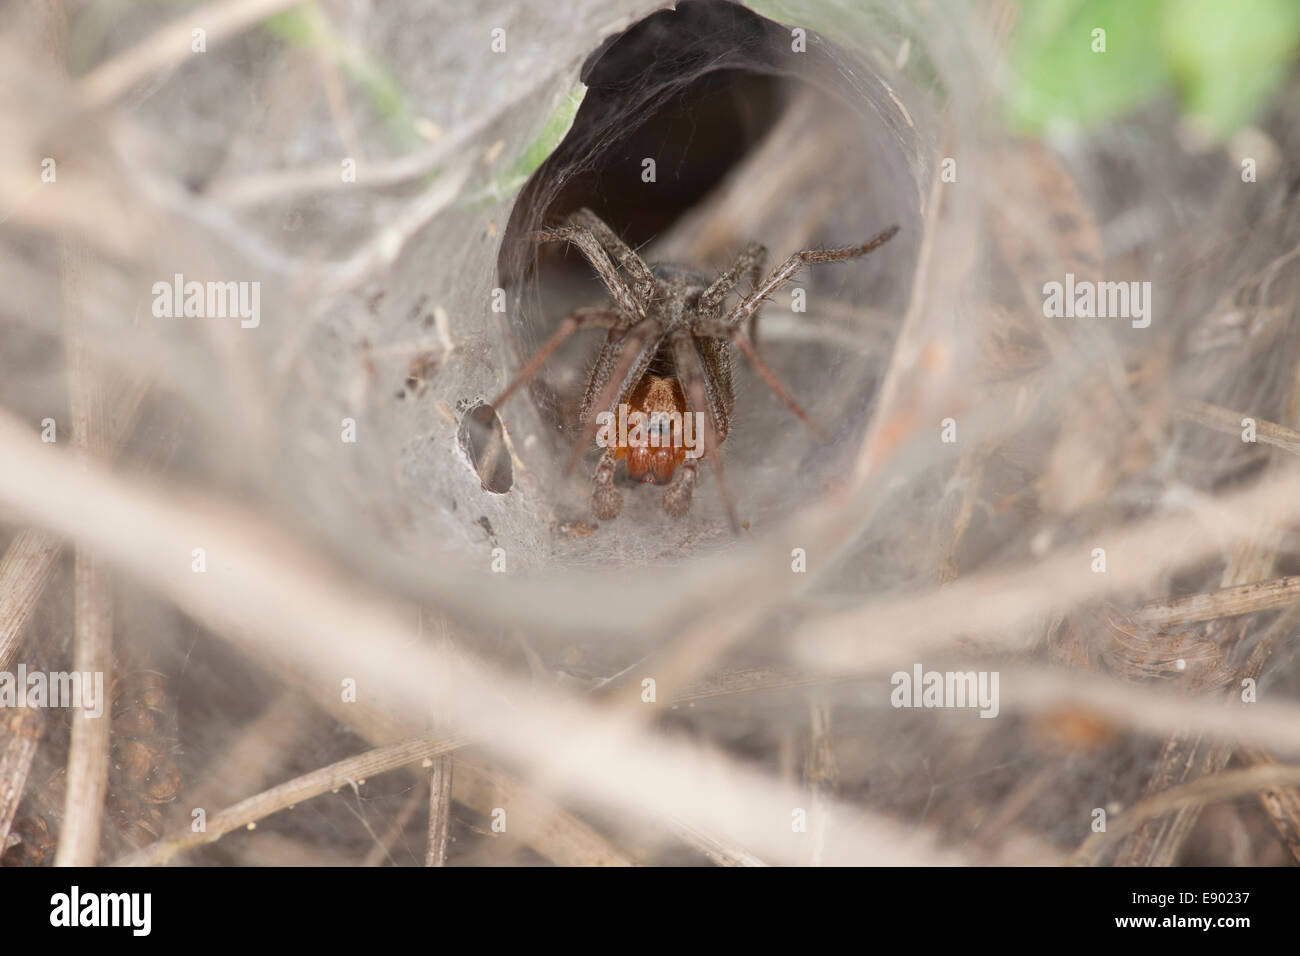 Gros plan d'une araignée dans son nid d'araignée Banque D'Images